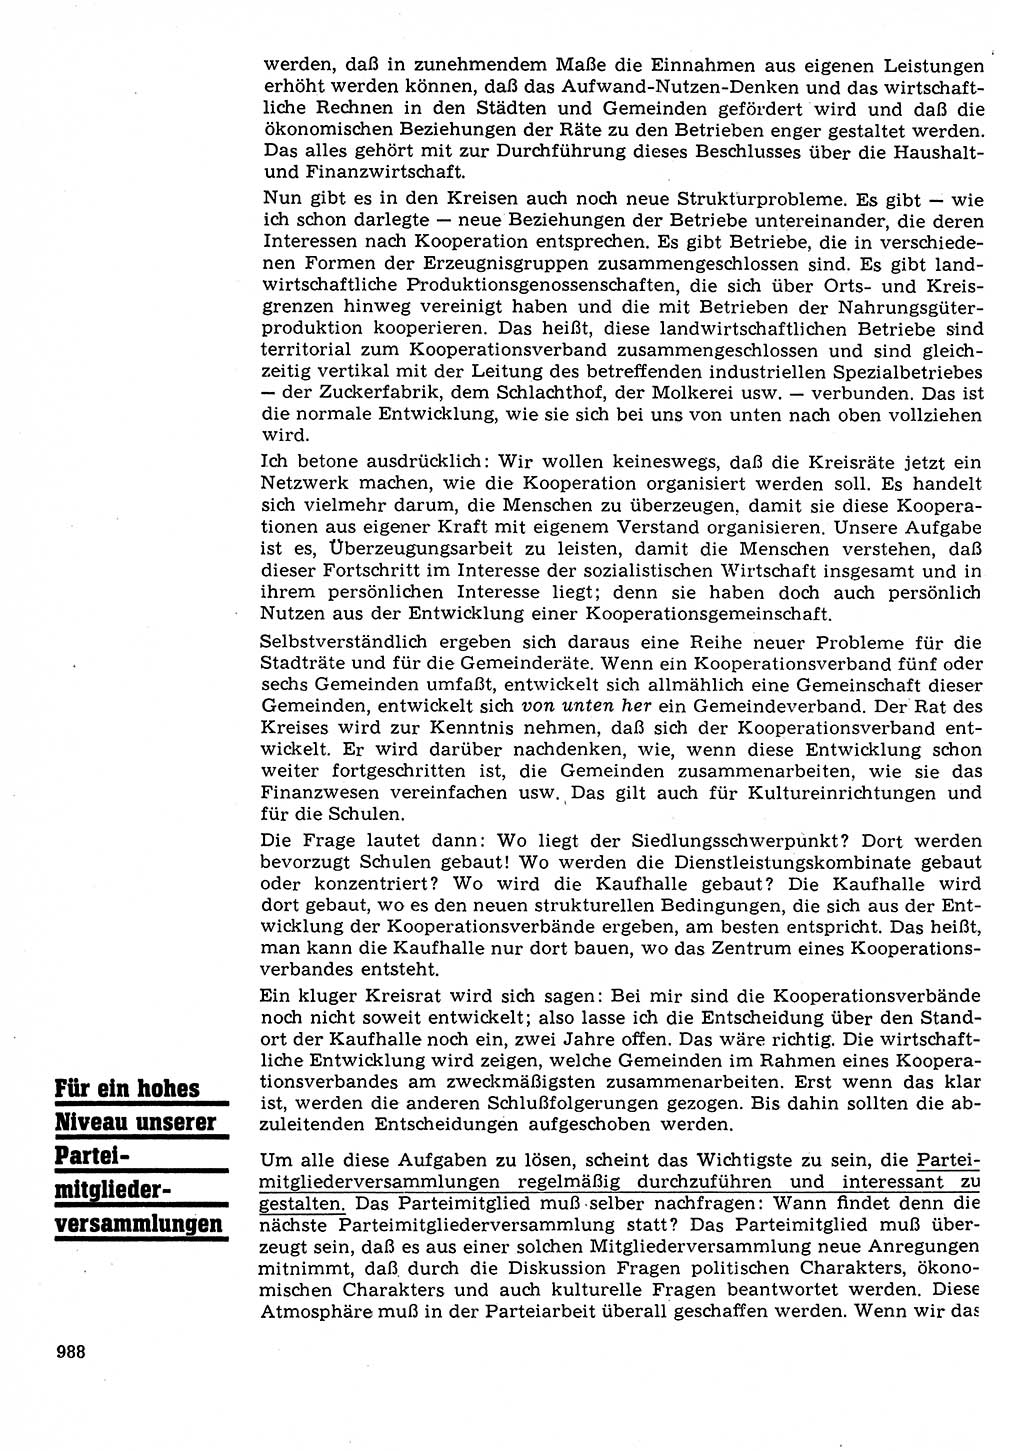 Neuer Weg (NW), Organ des Zentralkomitees (ZK) der SED (Sozialistische Einheitspartei Deutschlands) für Fragen des Parteilebens, 22. Jahrgang [Deutsche Demokratische Republik (DDR)] 1967, Seite 988 (NW ZK SED DDR 1967, S. 988)